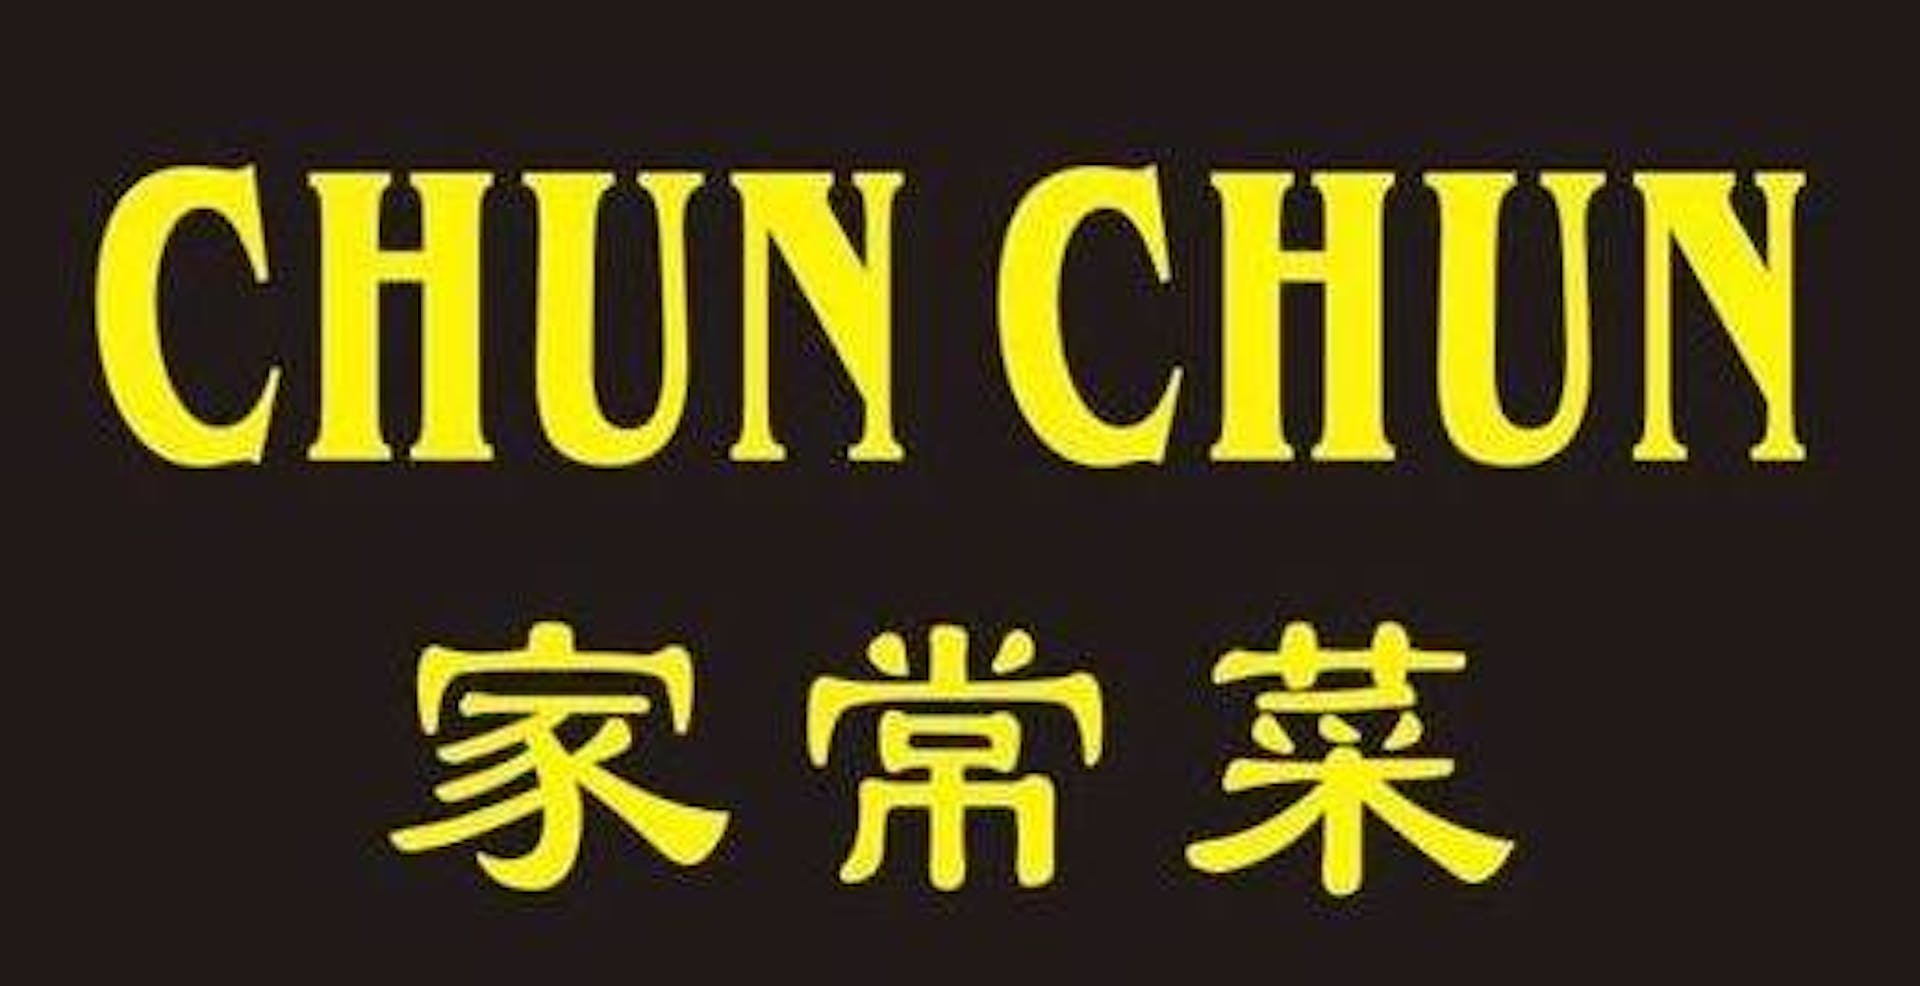 Chun Chun